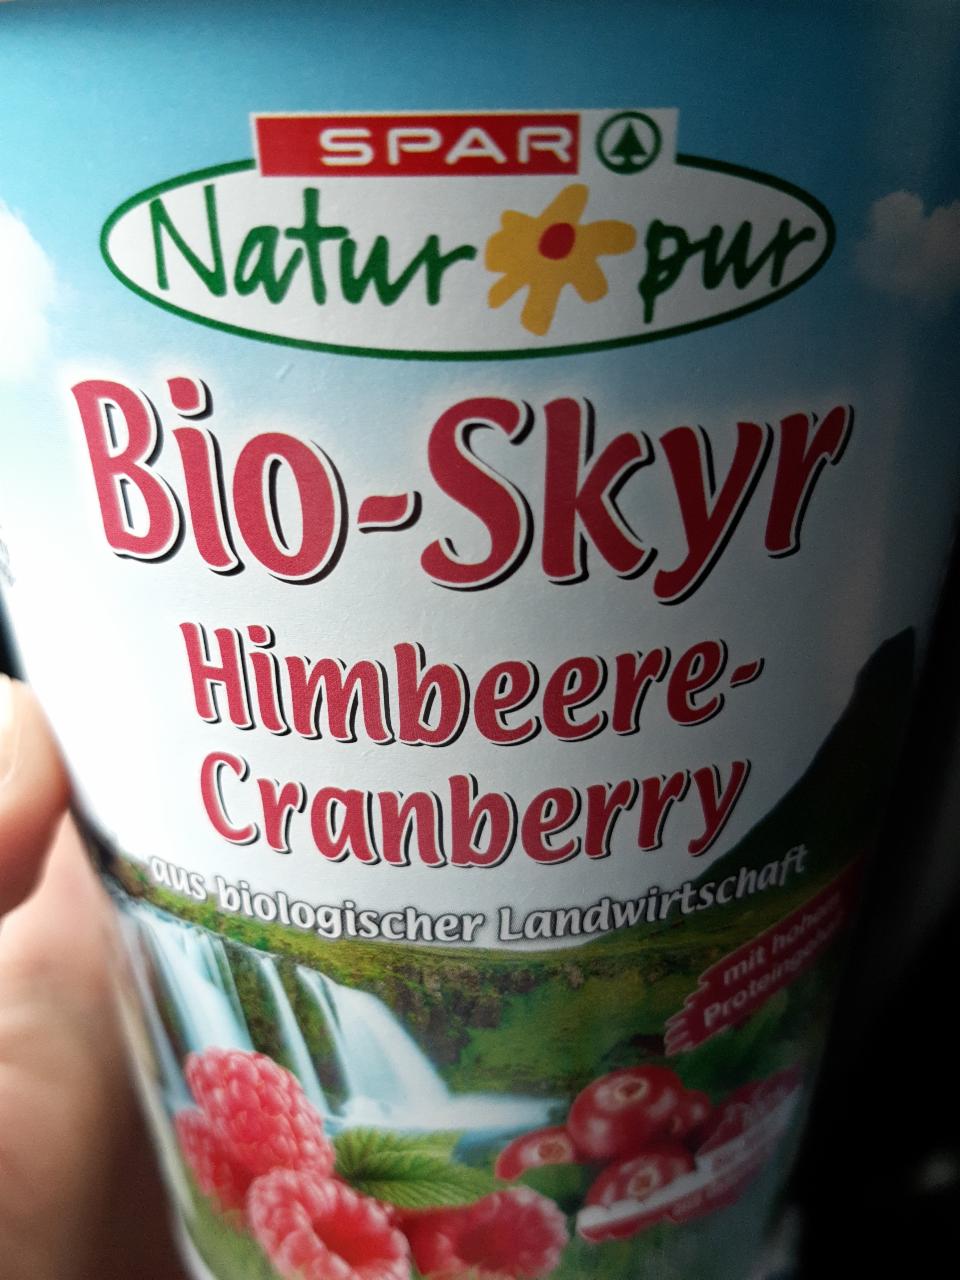 Fotografie - Bio-Skyr Himbeere-Cranberry Naturpur